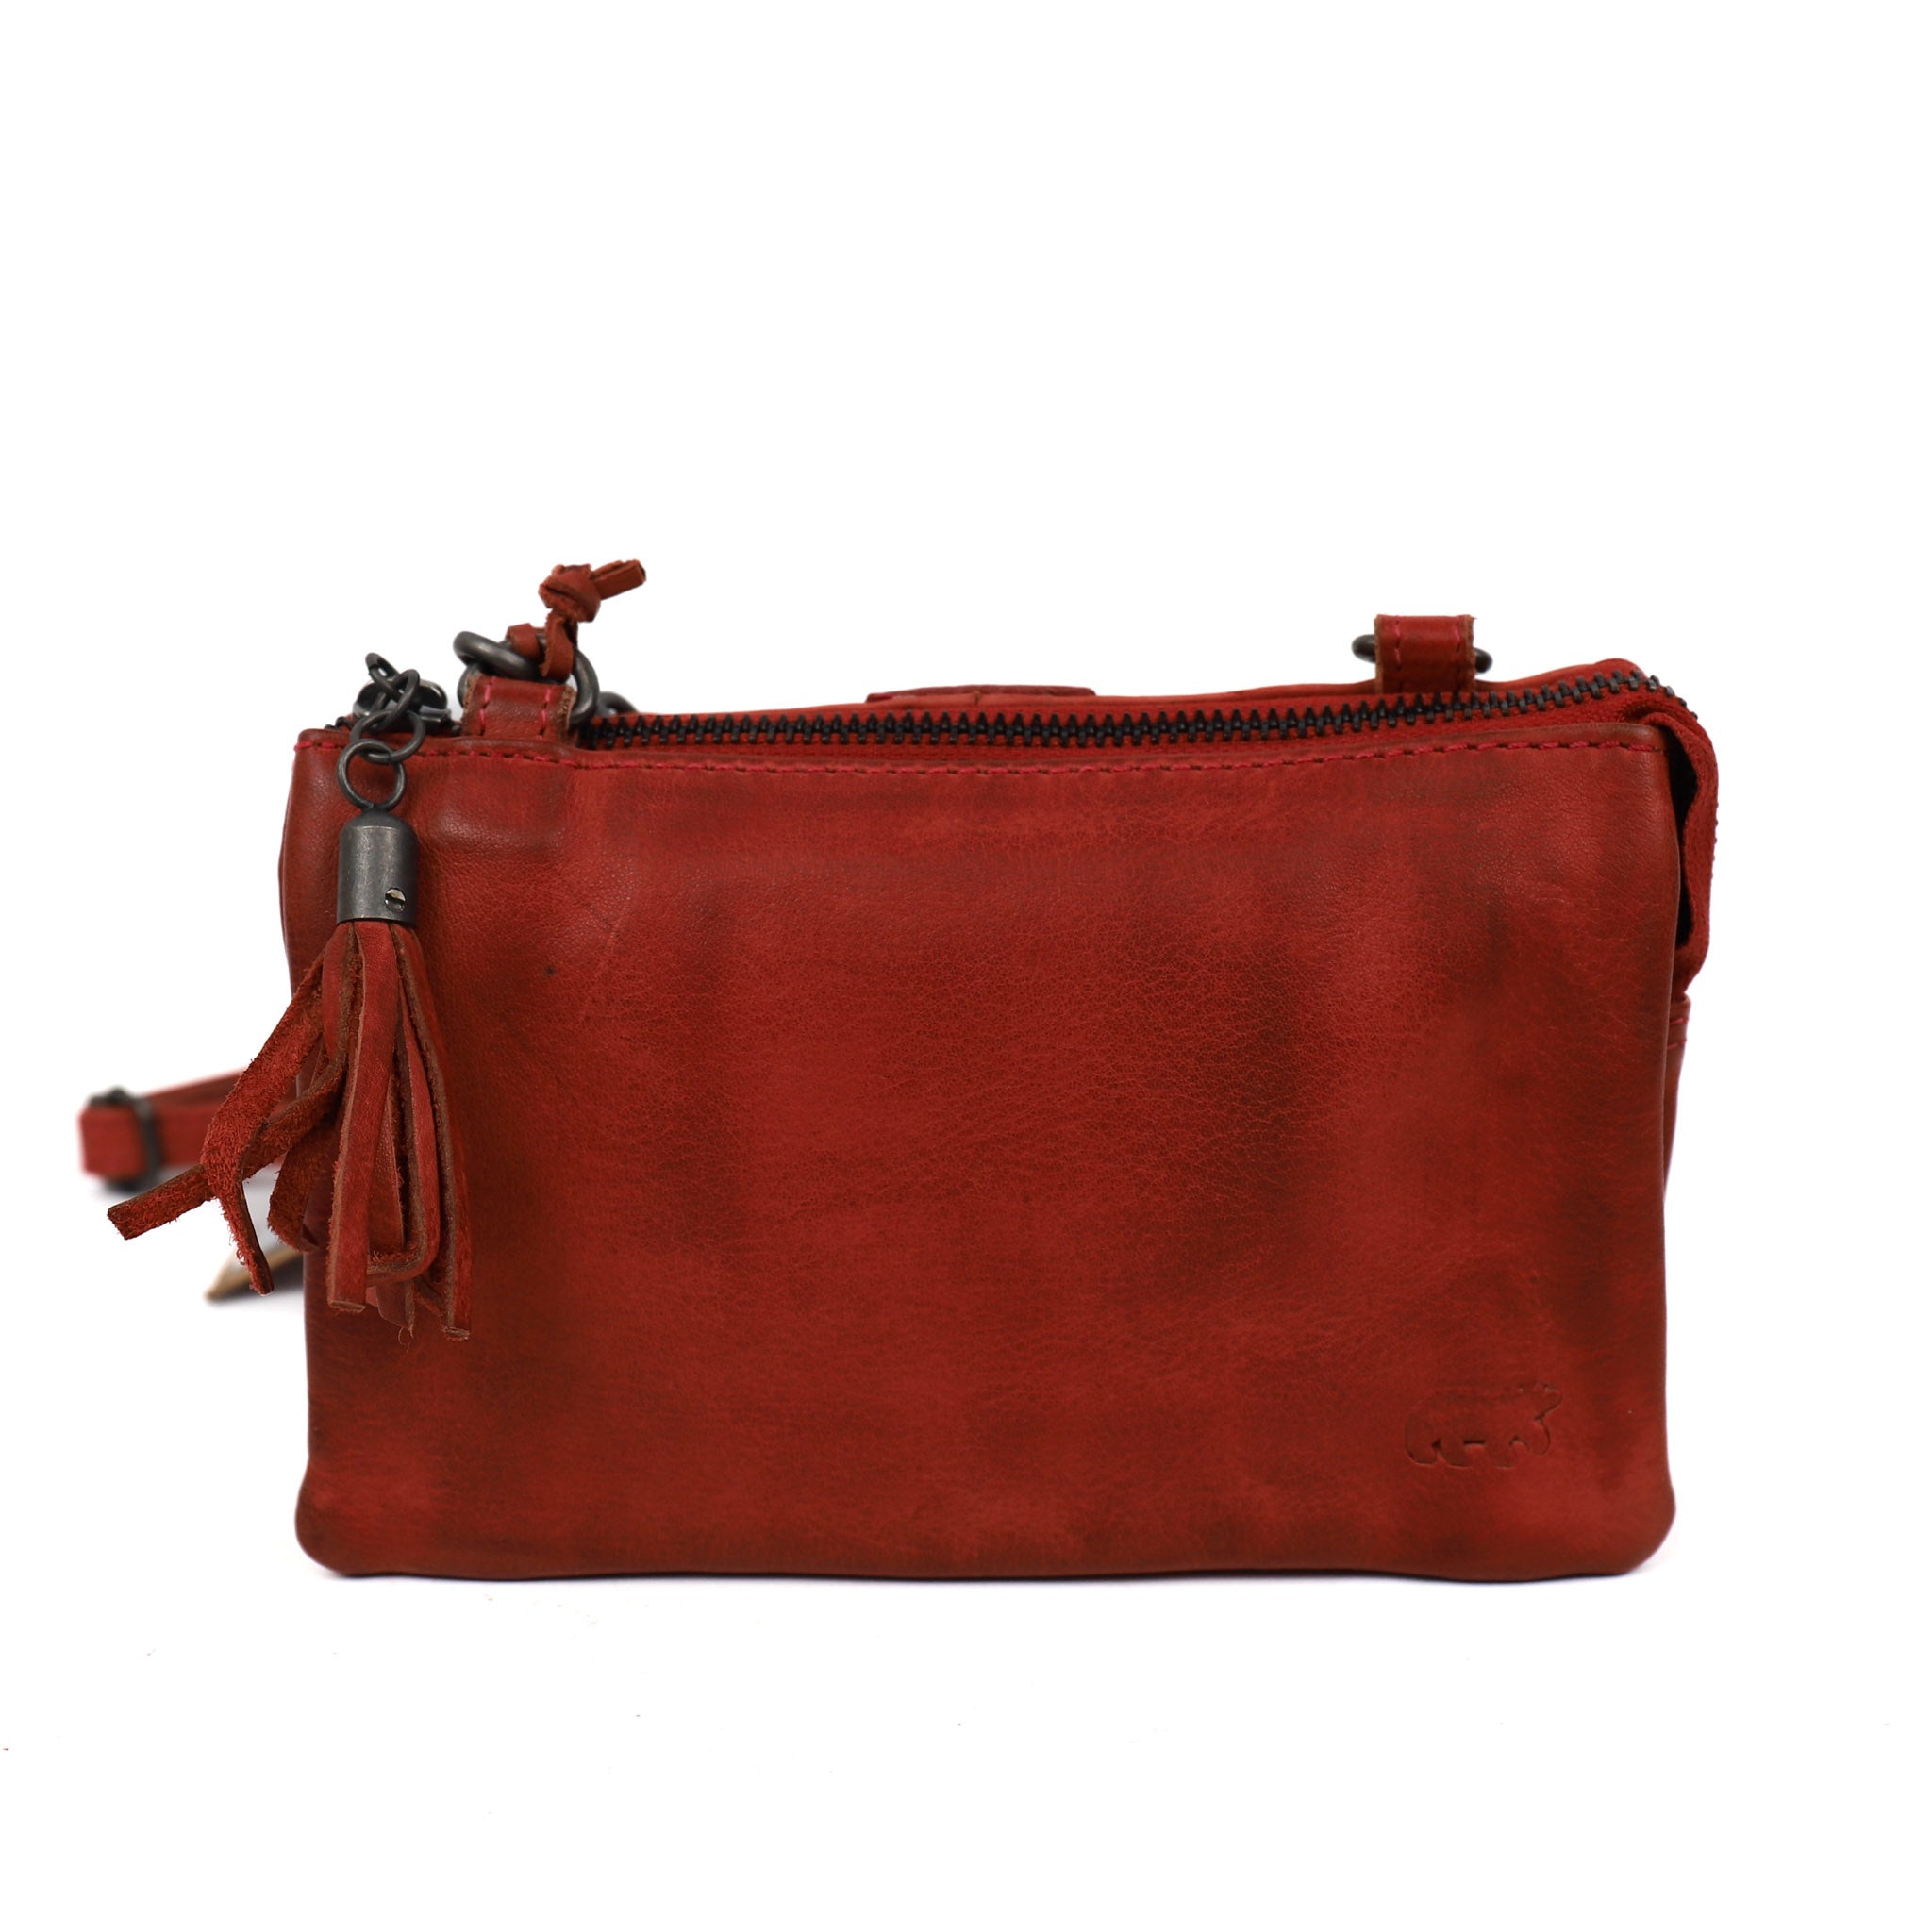 Purse bag 'Umi' red - CP 1493